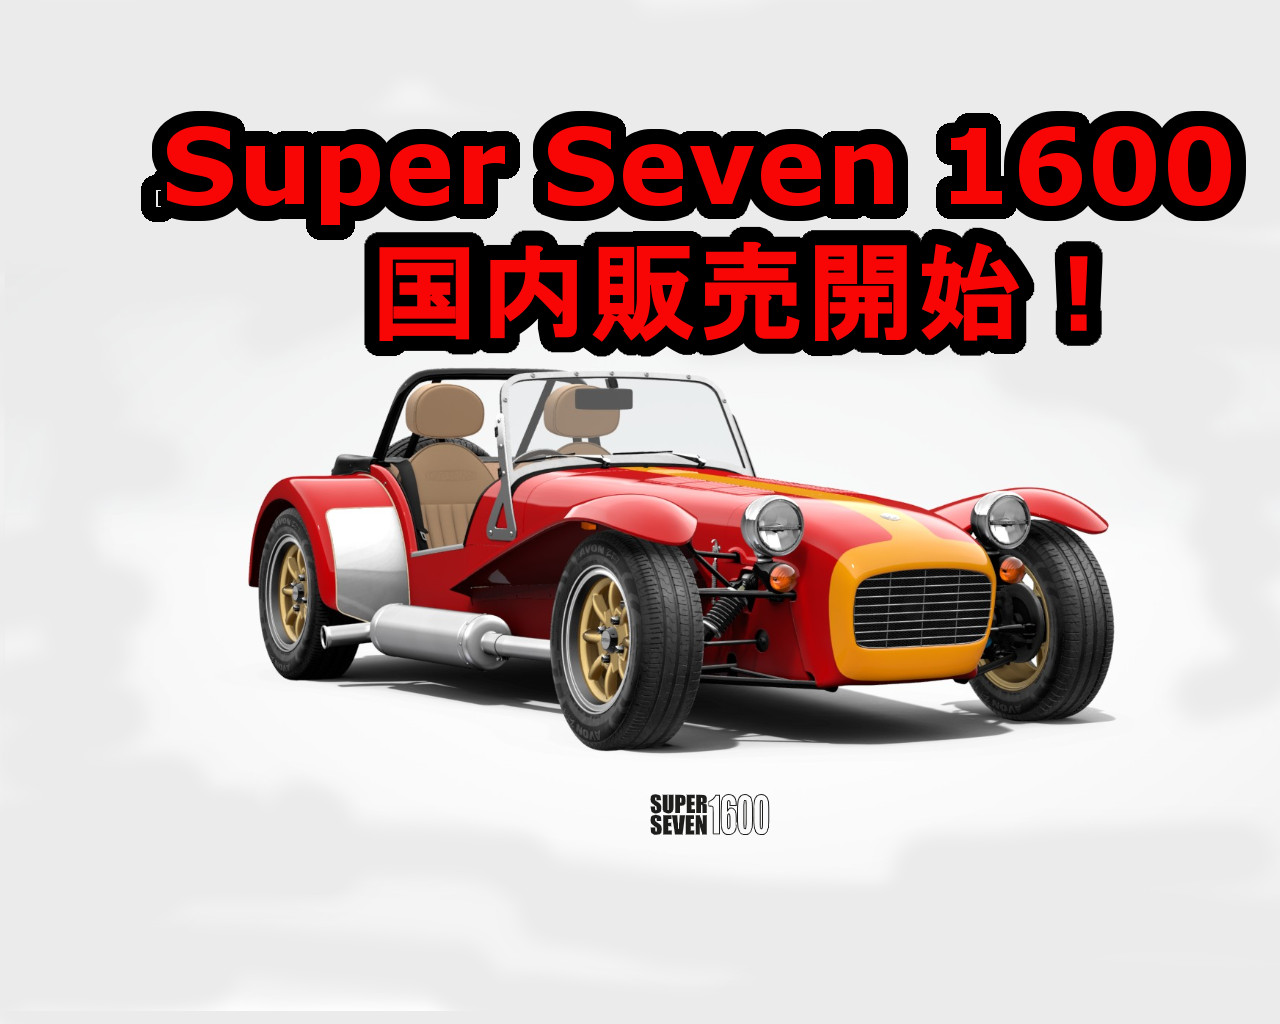 ケータハム New Super Seven 1600 スーパーセブン1600 発売開始です 